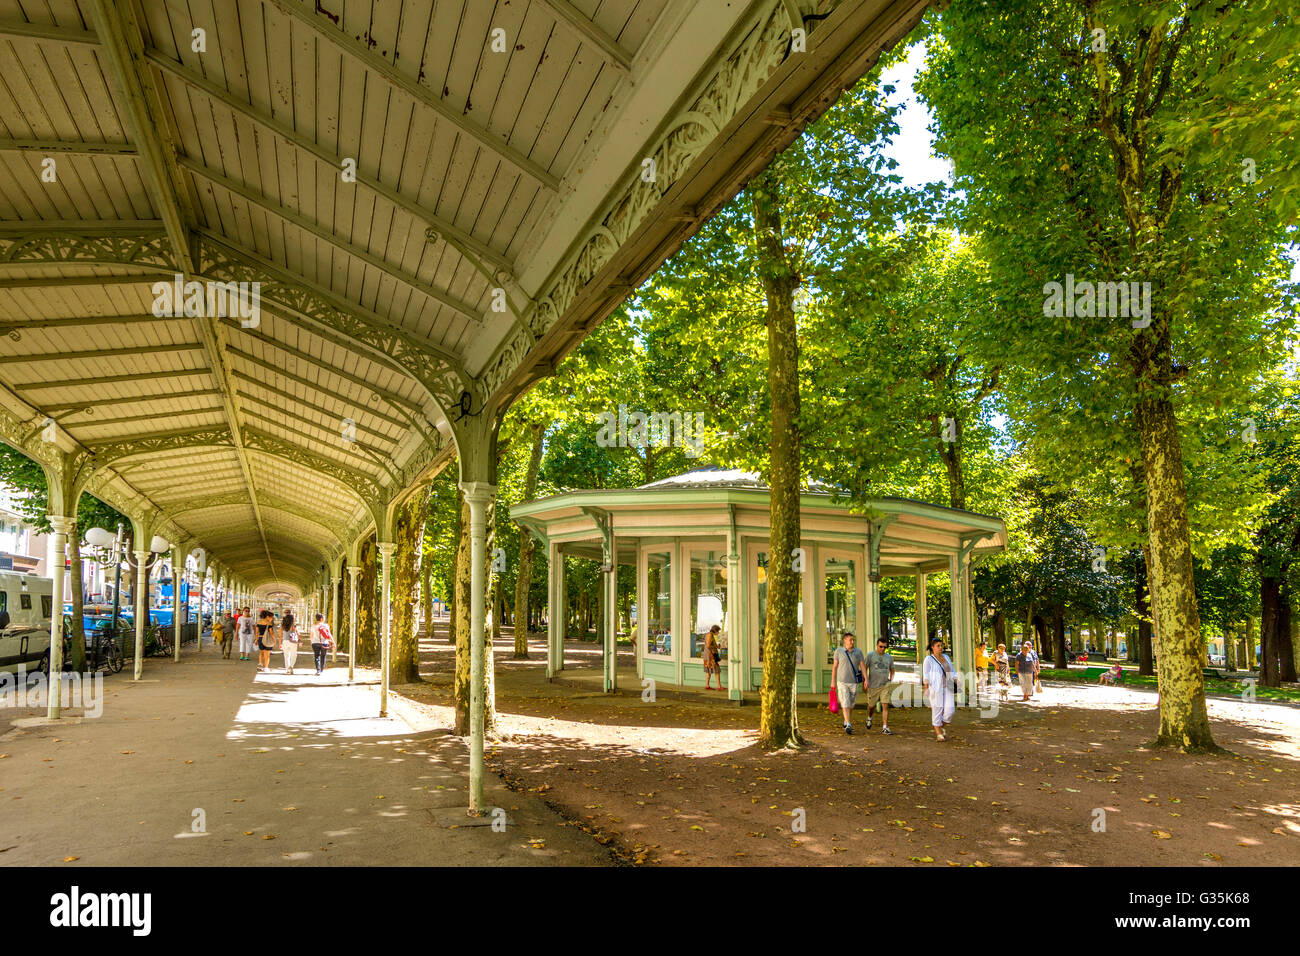 Pavilion in Parc des Sources / Source park, Vichy, Allier, France, Europe  Stock Photo - Alamy